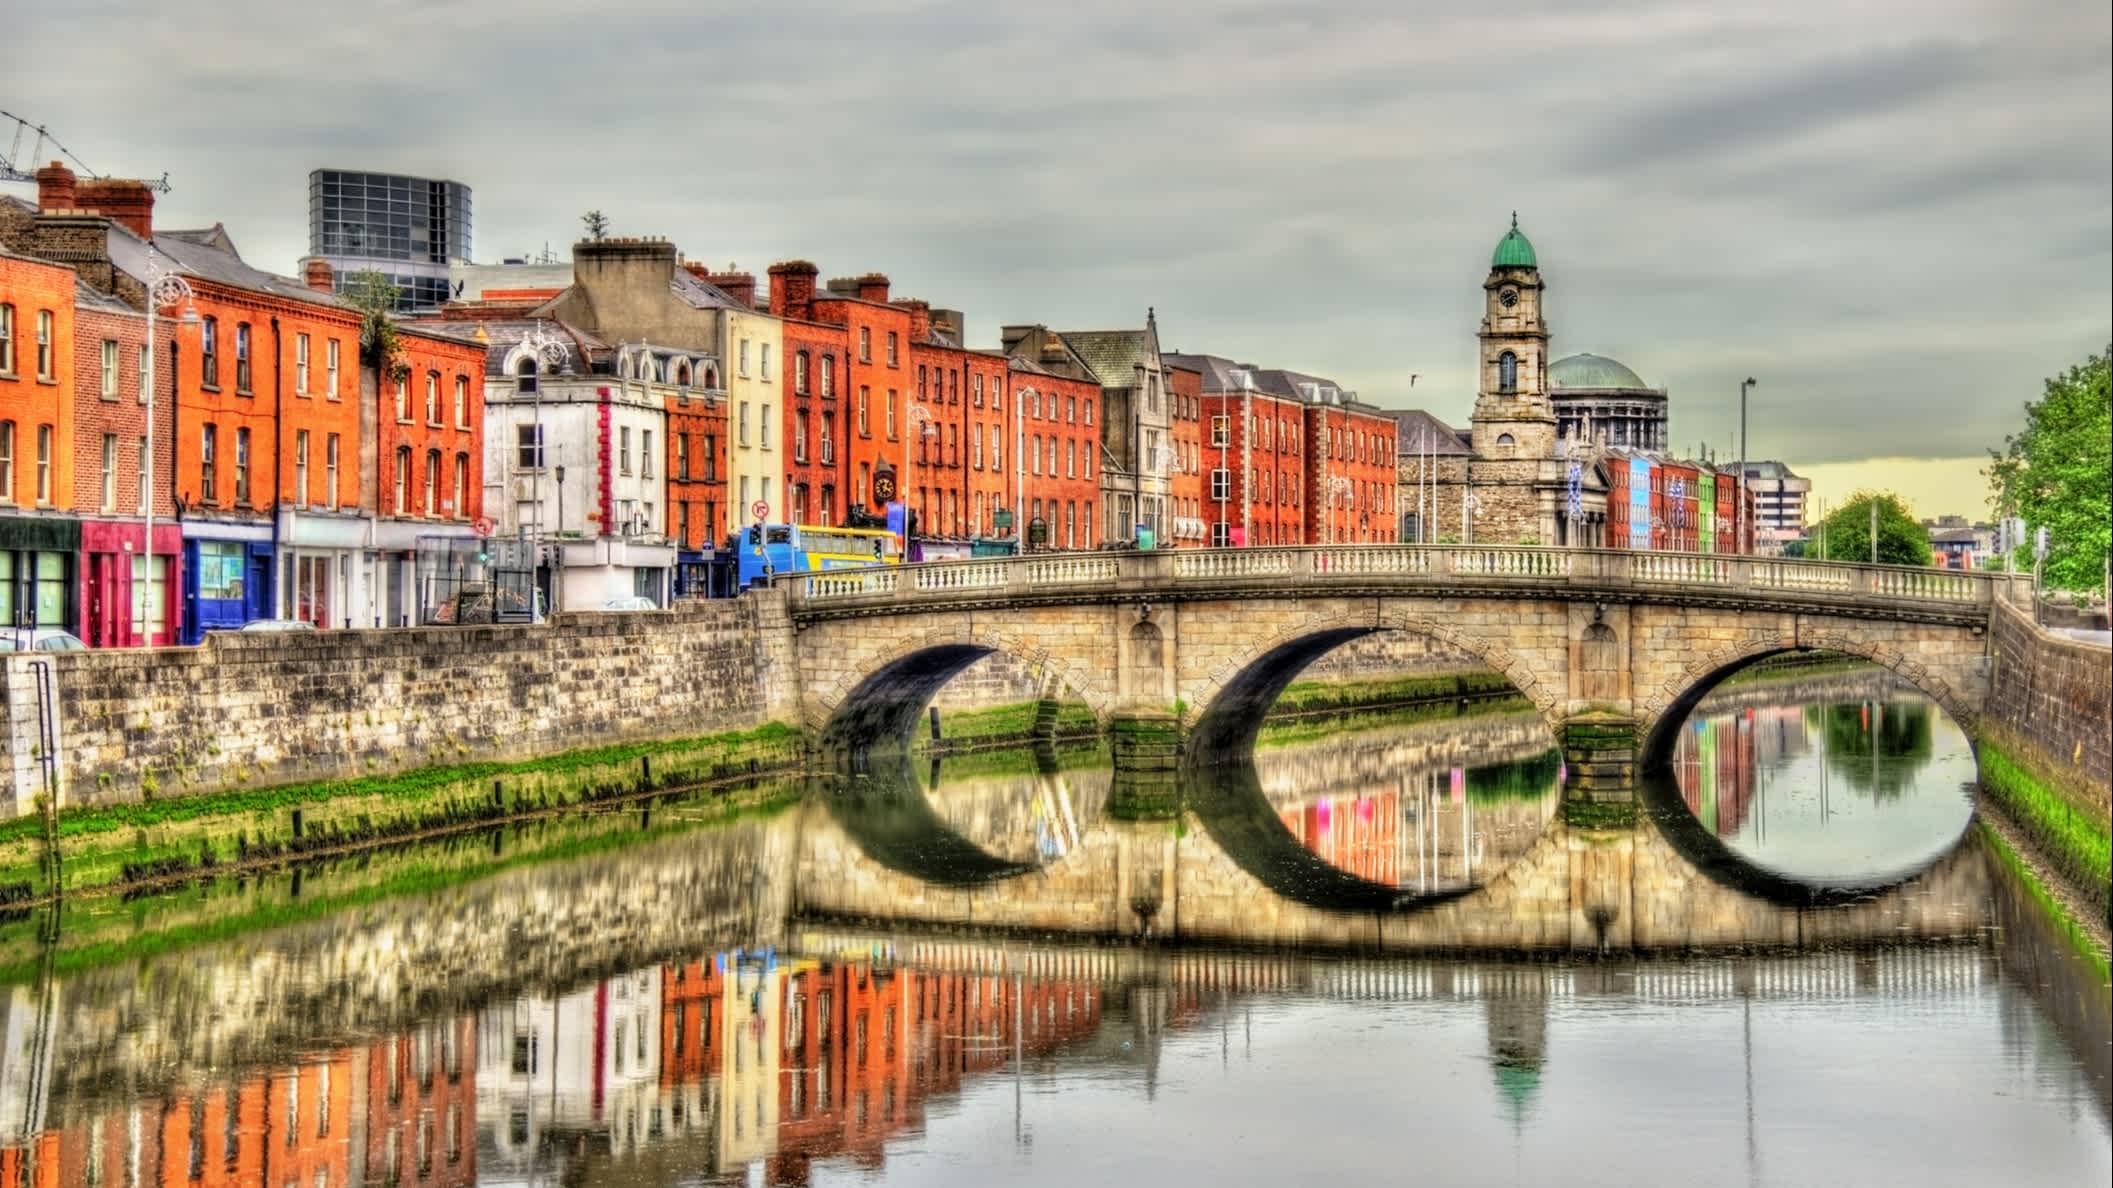 Vue sur le pont Mellows bordé de maisons orangées à Dublin, Irlande

